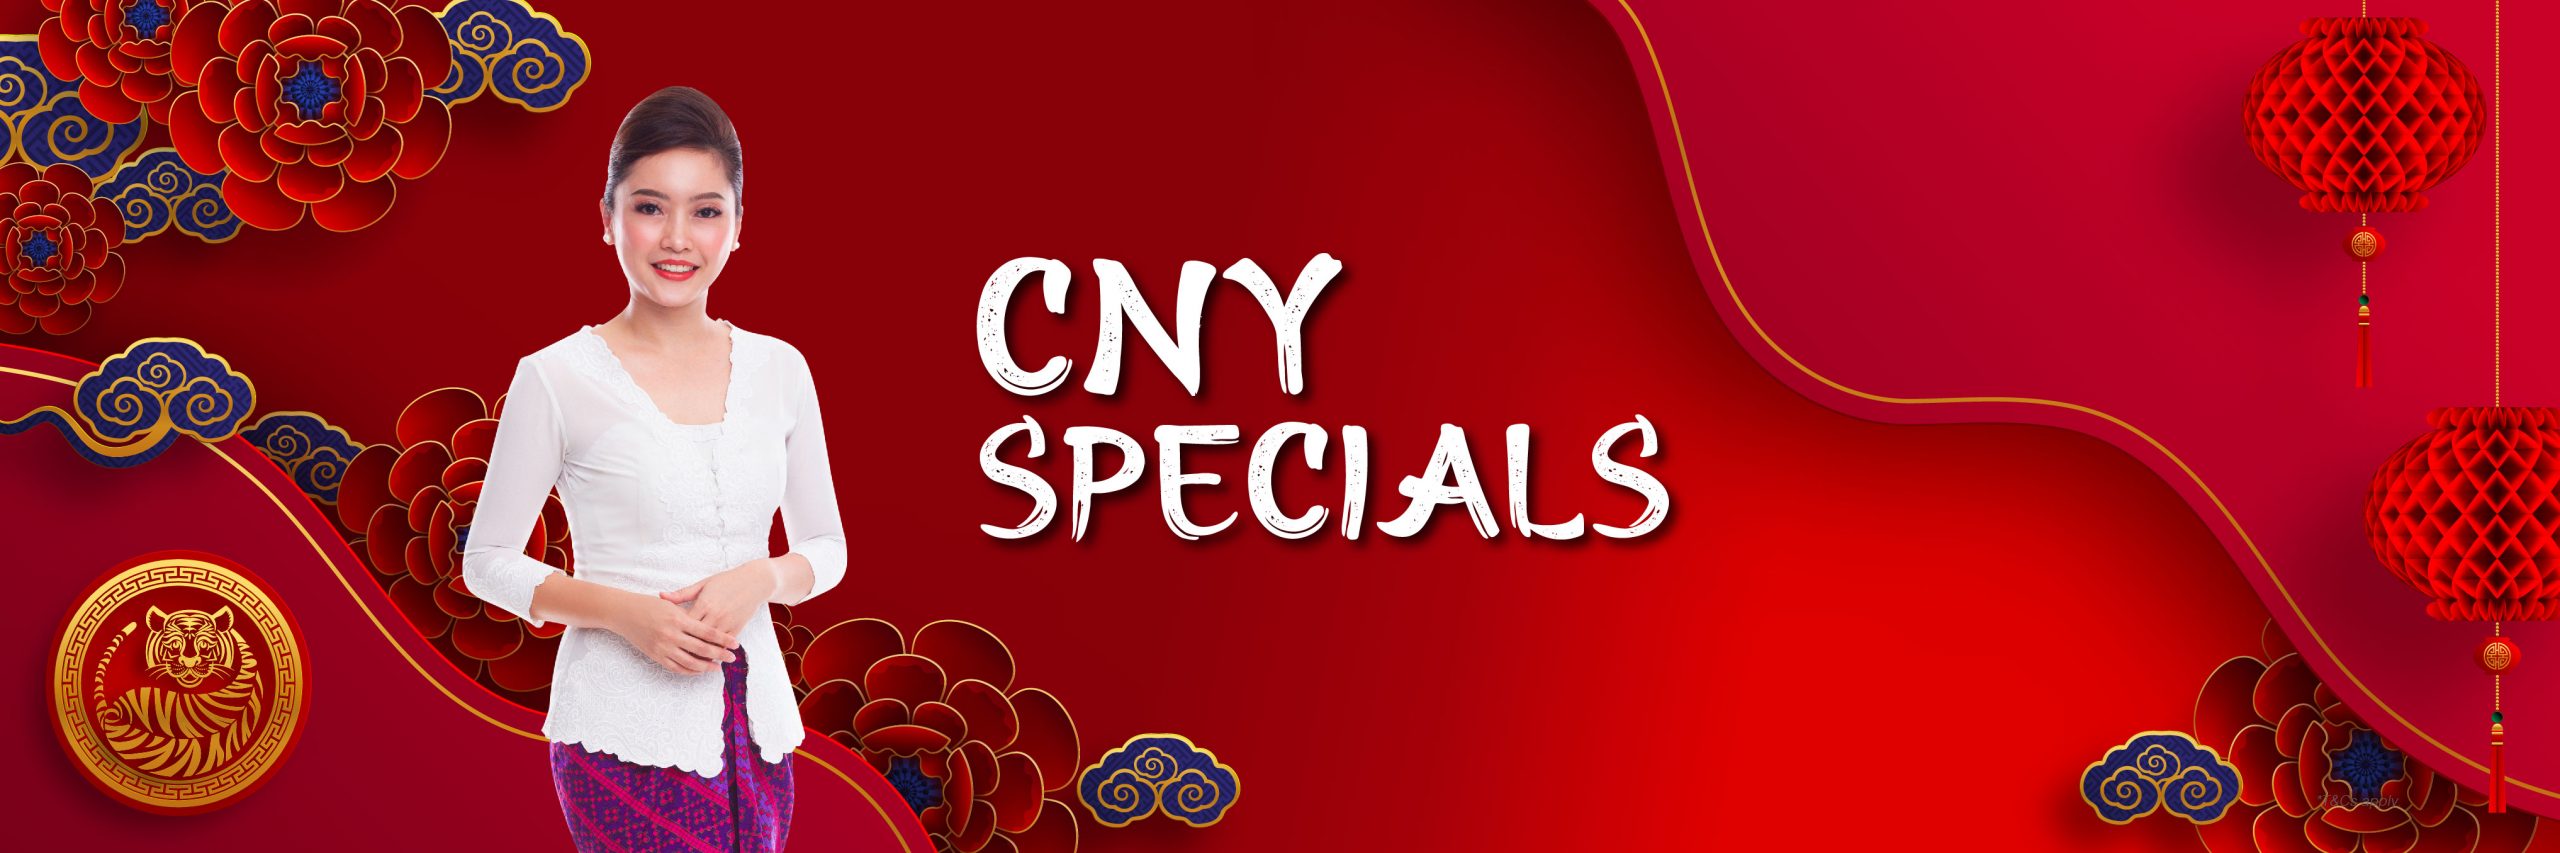 Malindo Air CNY Specials CNY Specials WB scaled